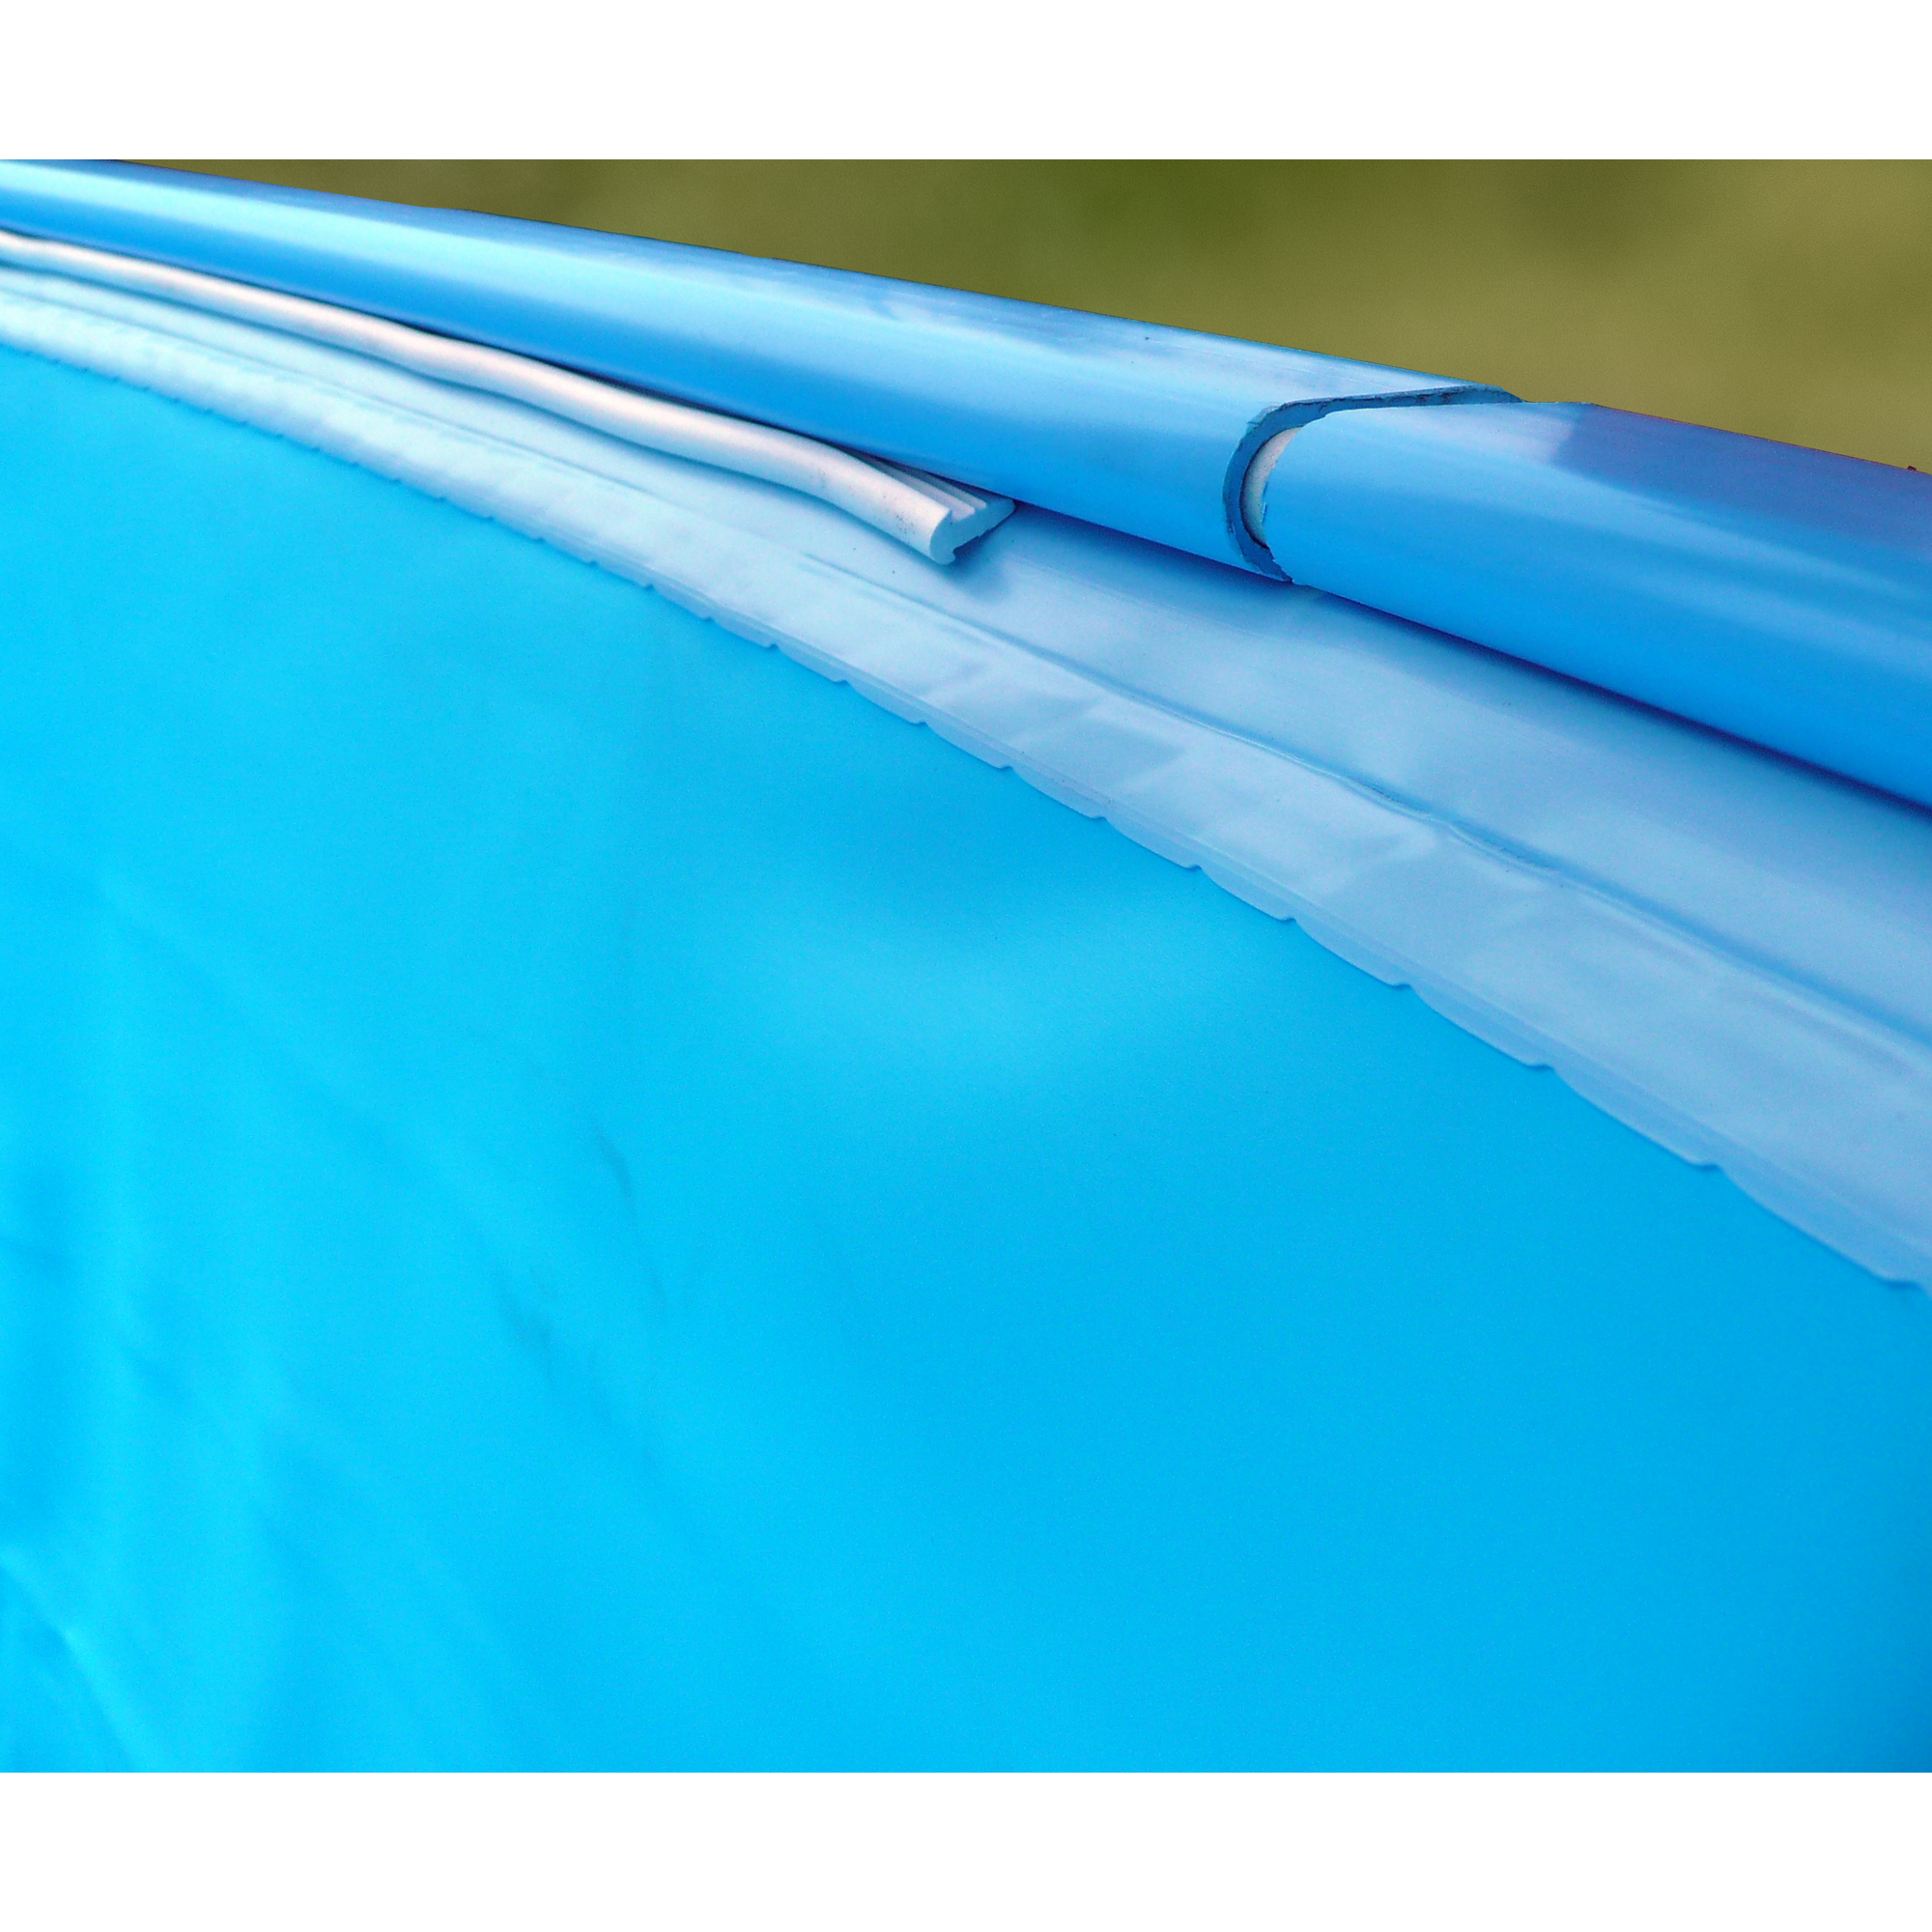 Aufstellpool-Set 'Tulip' blau/weiß rund Ø 350 x 120 cm + product picture